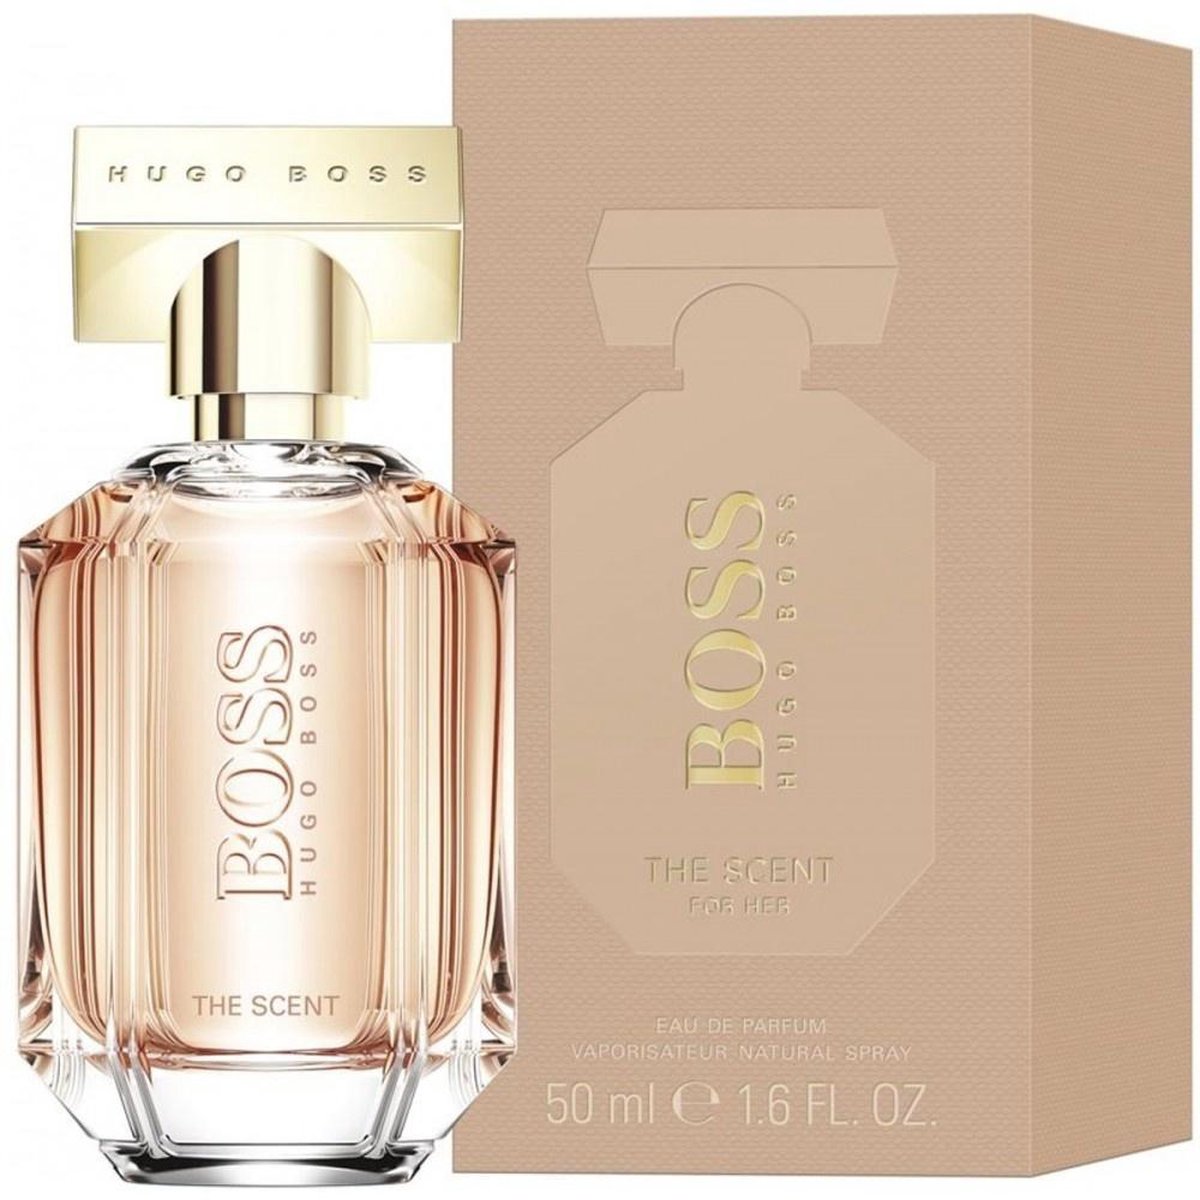 Hugo Boss The Scent 50 ml - Eau de Parfum - Damesparfum | bol.com